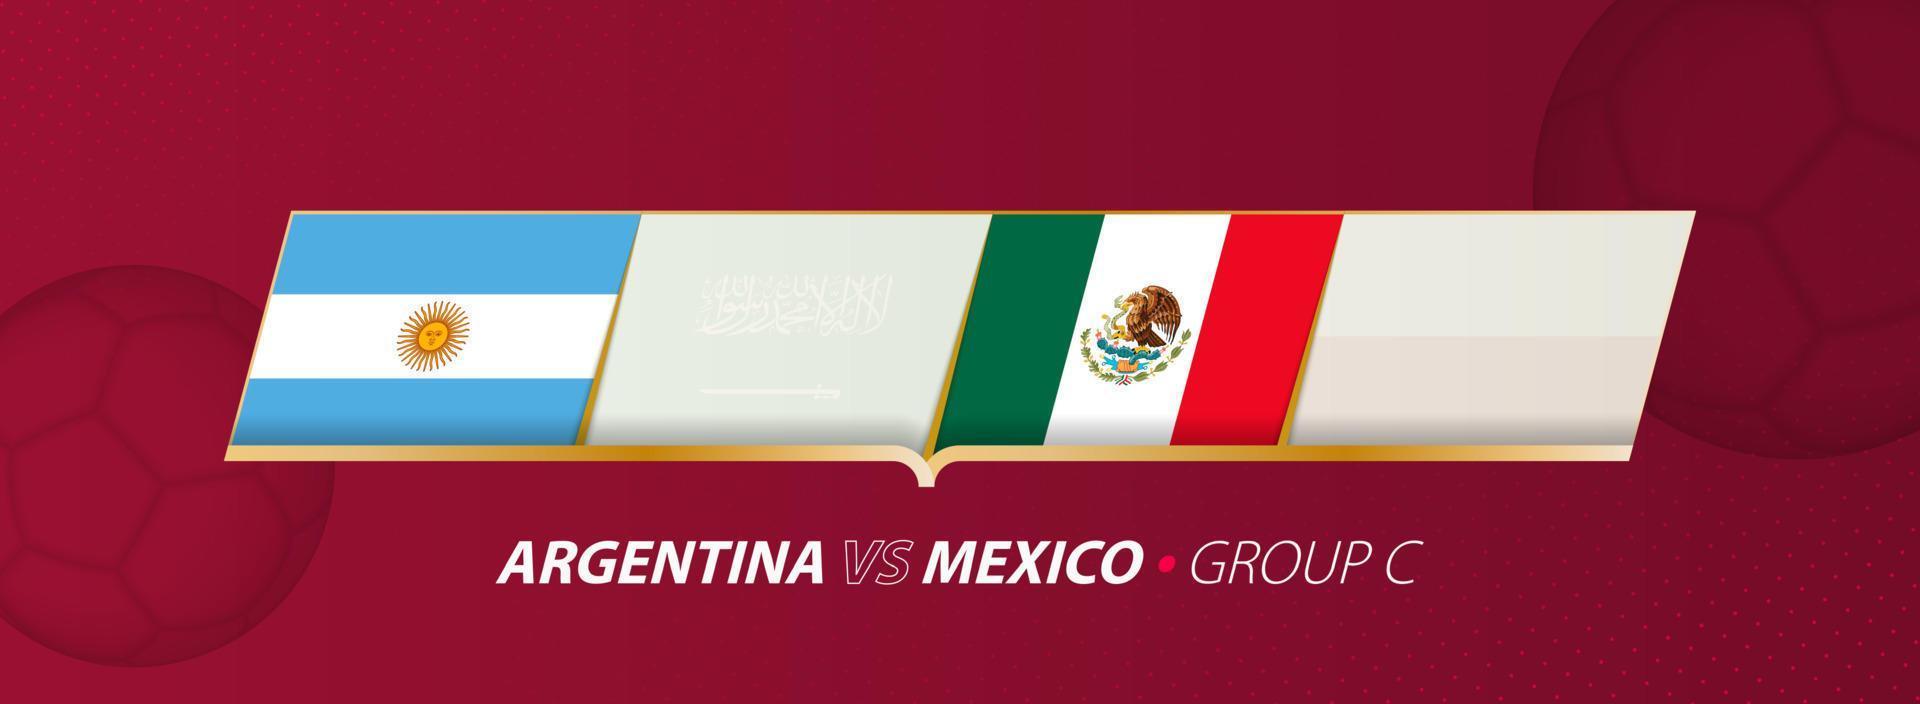 Argentinië - Mexico Amerikaans voetbal bij elkaar passen illustratie in groep a. vector